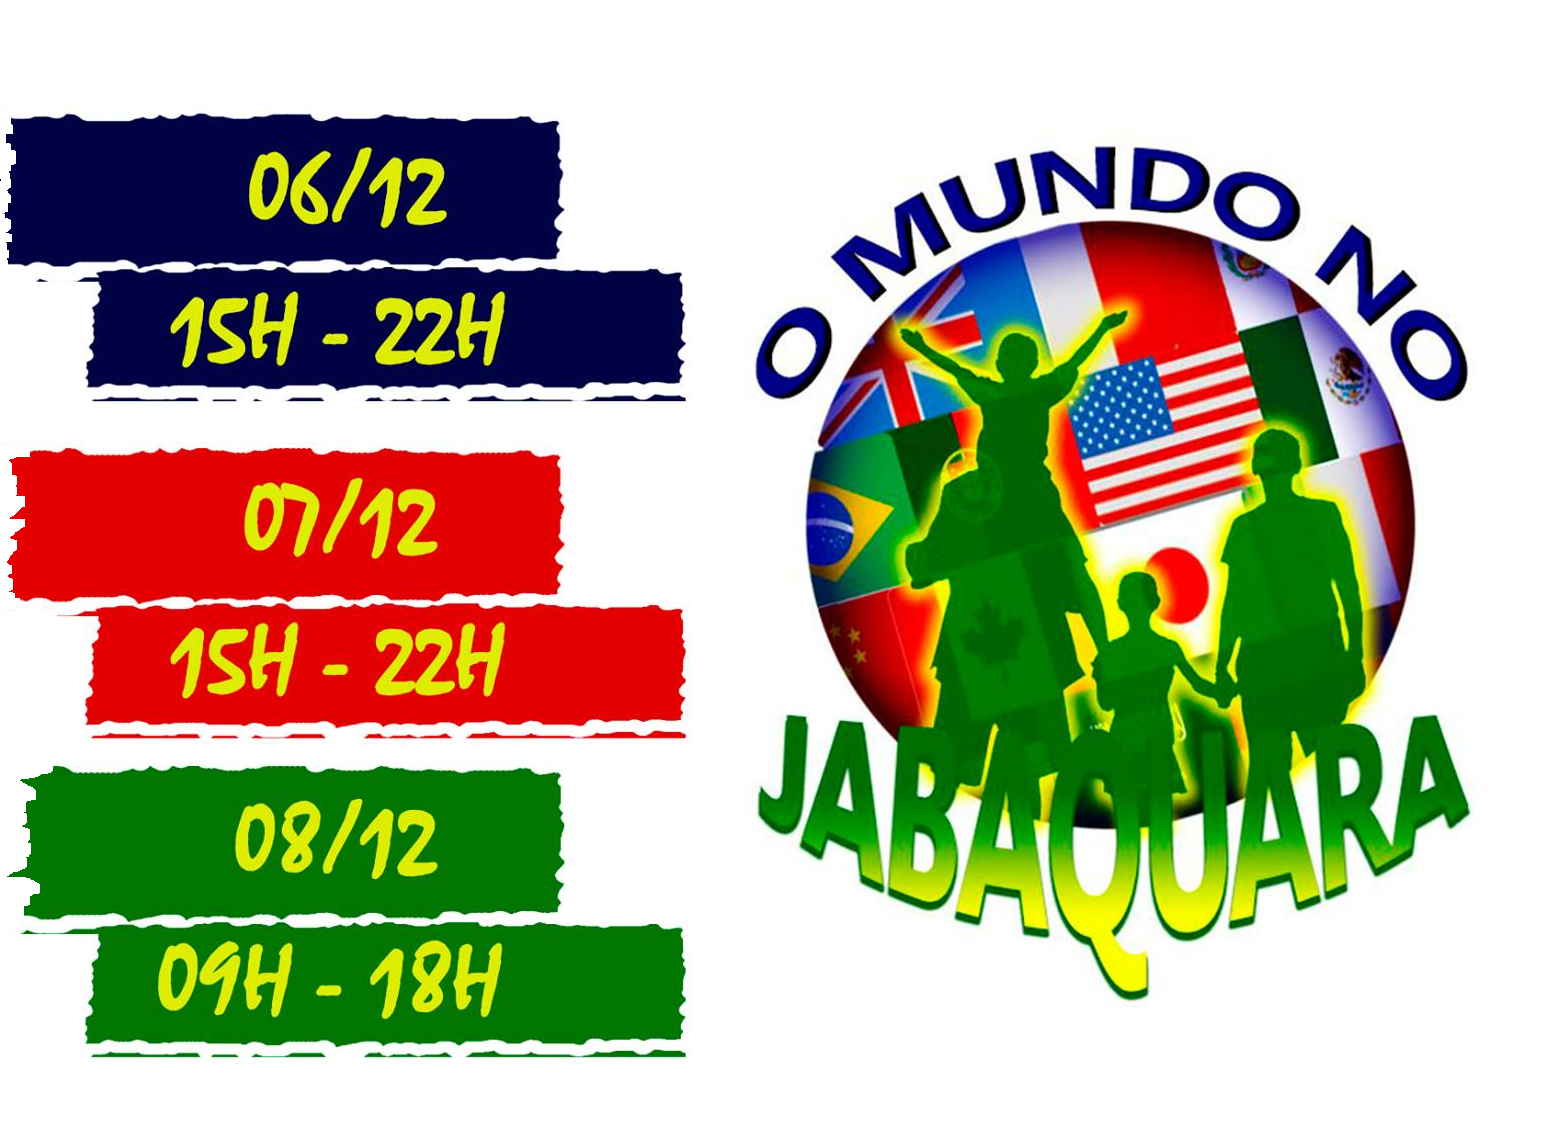 Imagem com datas e horas em retângulos coloridos e ao lado um circulo com a bandeira de vários países e os dizeres "O mundo no Jabaquara"